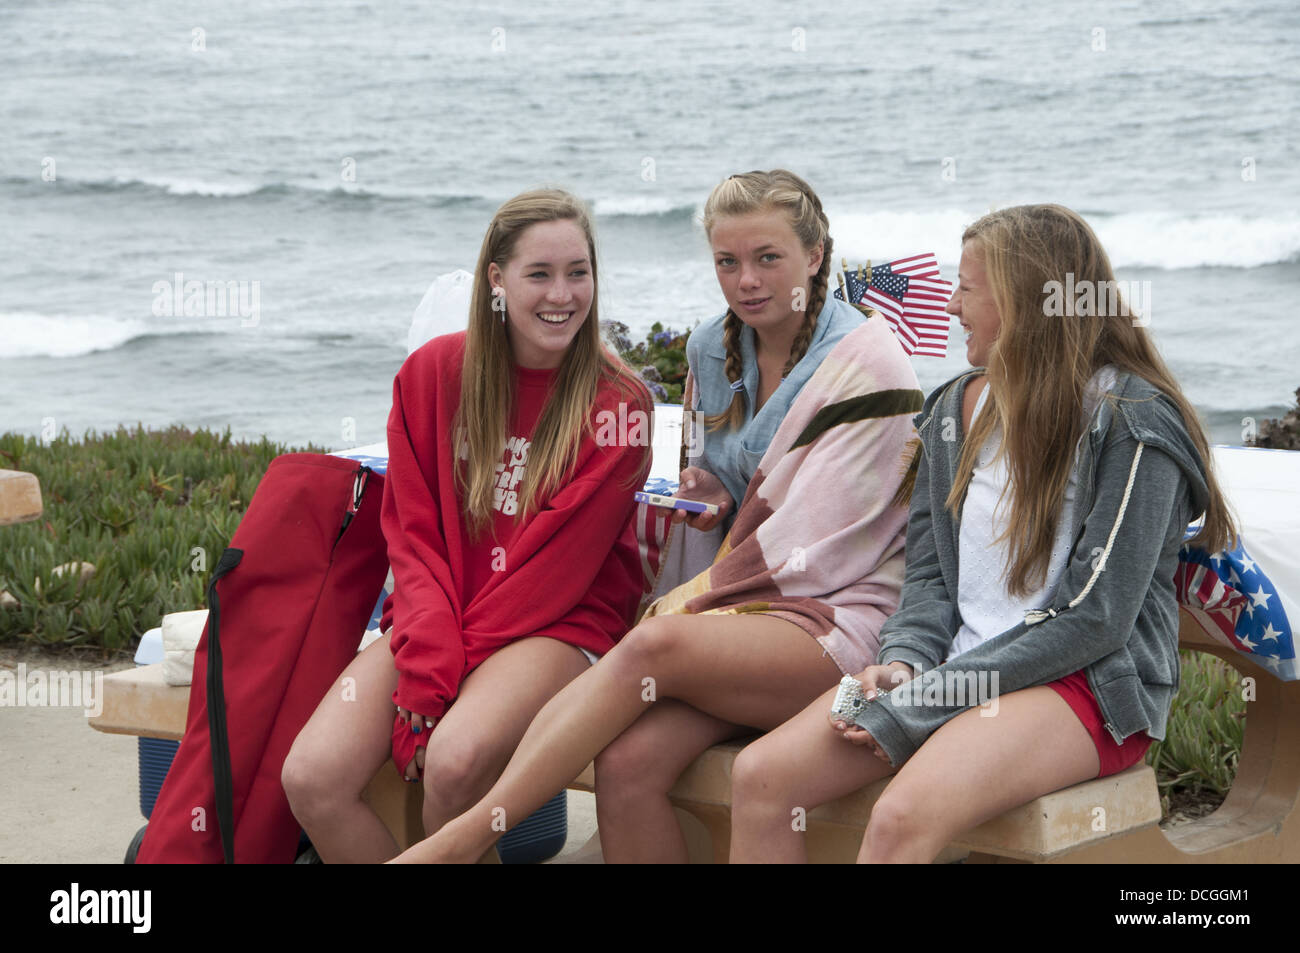 Tres adolescentes en la playa de La Jolla, California, el 4 de julio de 2012 Foto de stock